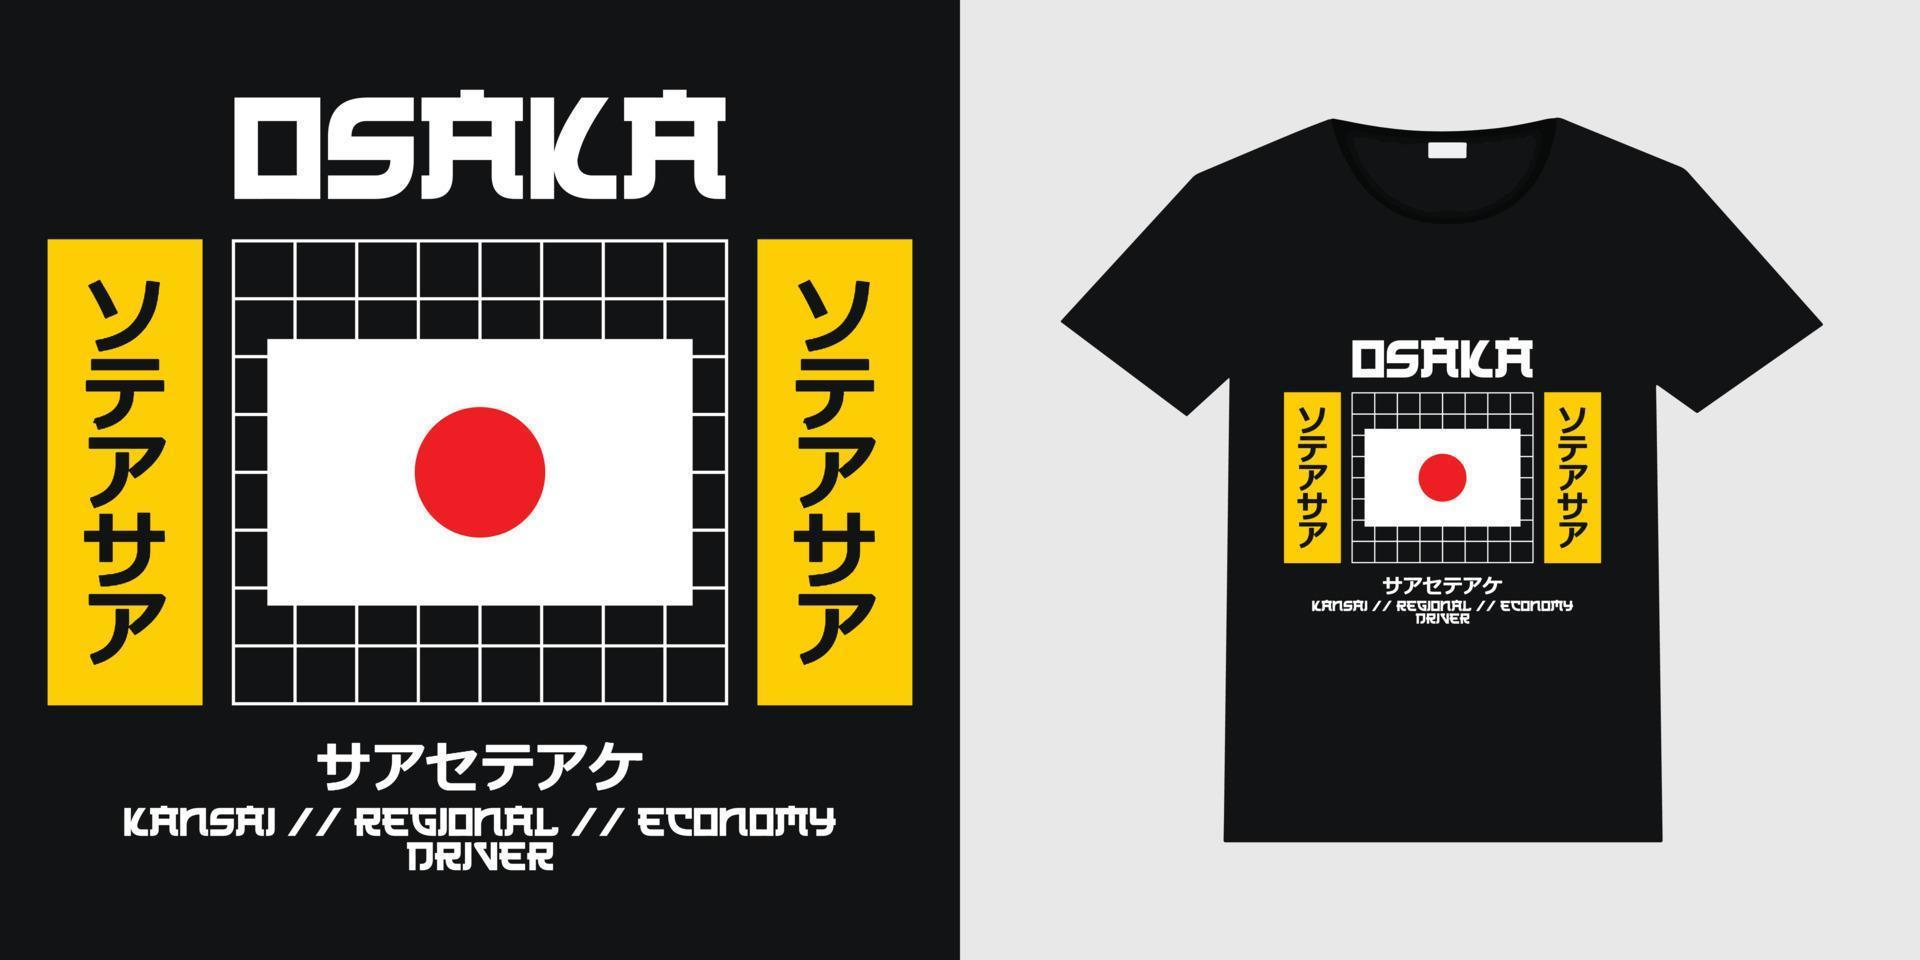 design de vetor criativo sobre o centro da área de osaka kansai em um fundo preto. design de t-shirt de desgaste urbano japonês com ilustração de maquete de t-shirt preta.